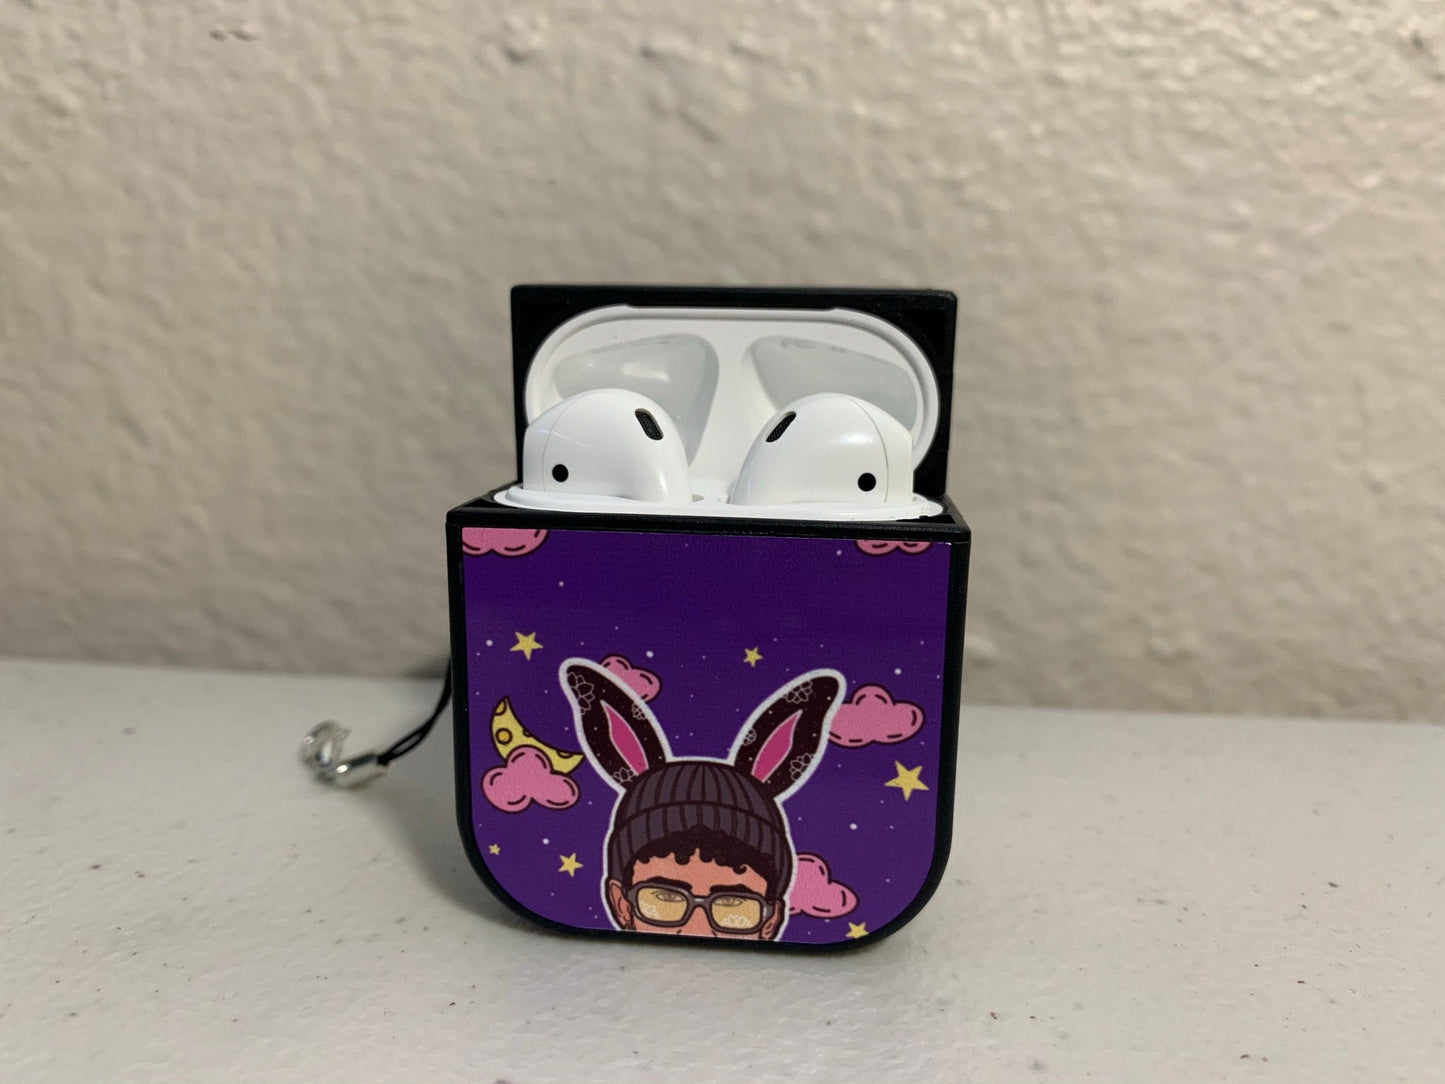 Trellas Bad Bunny Airpod cases